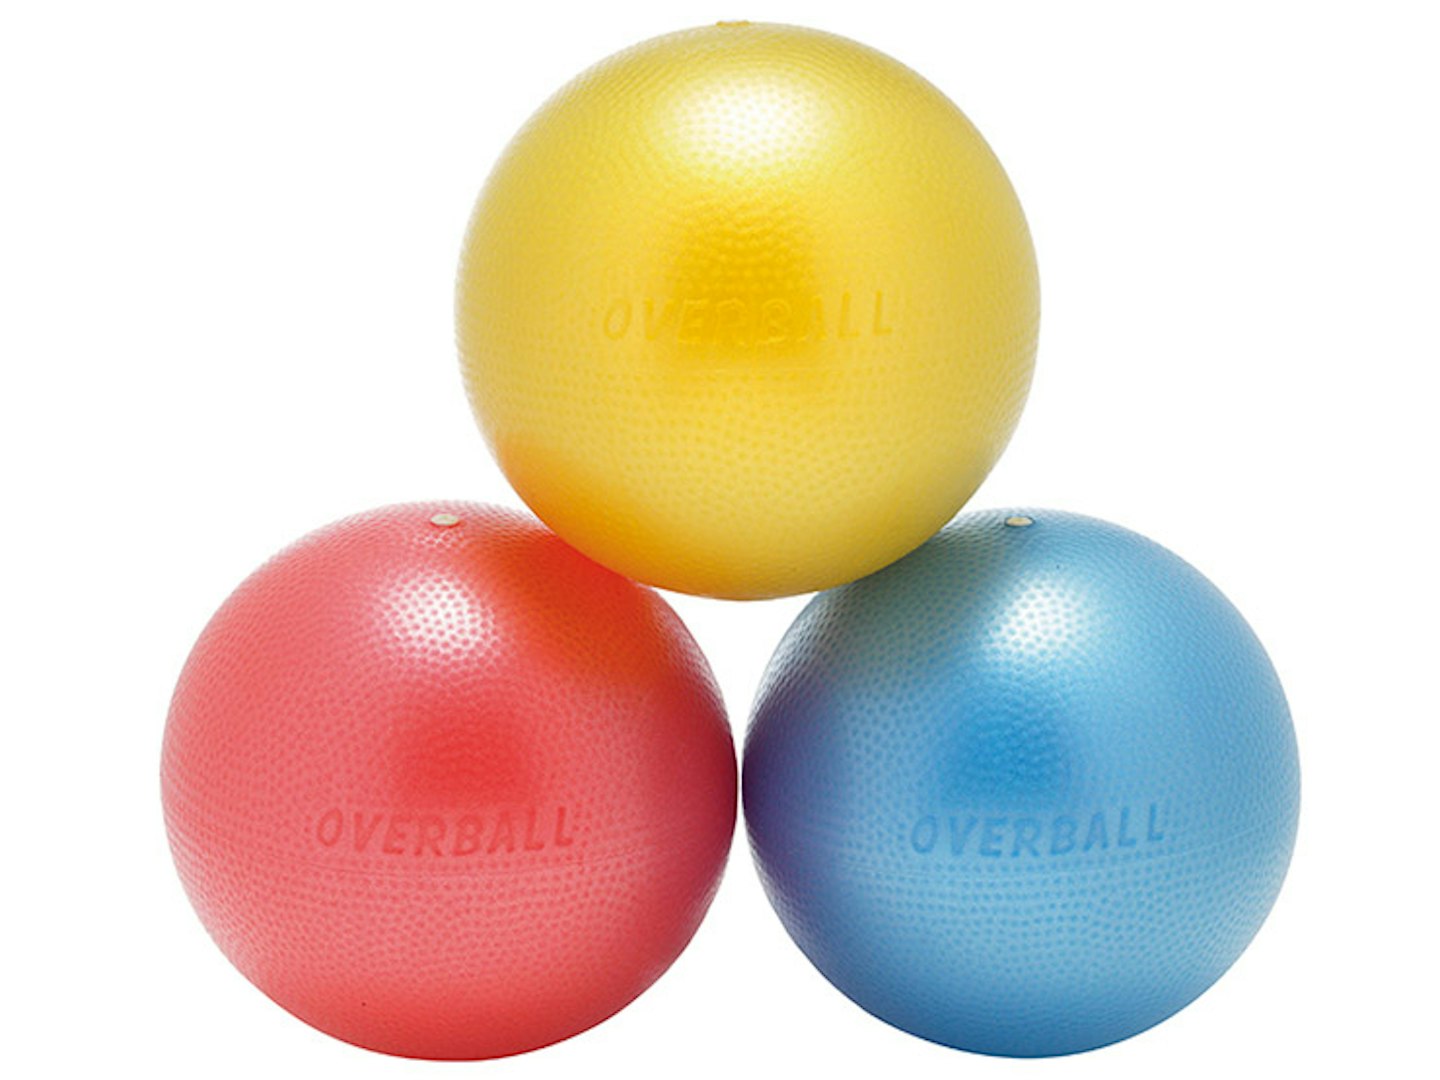 Physique ball